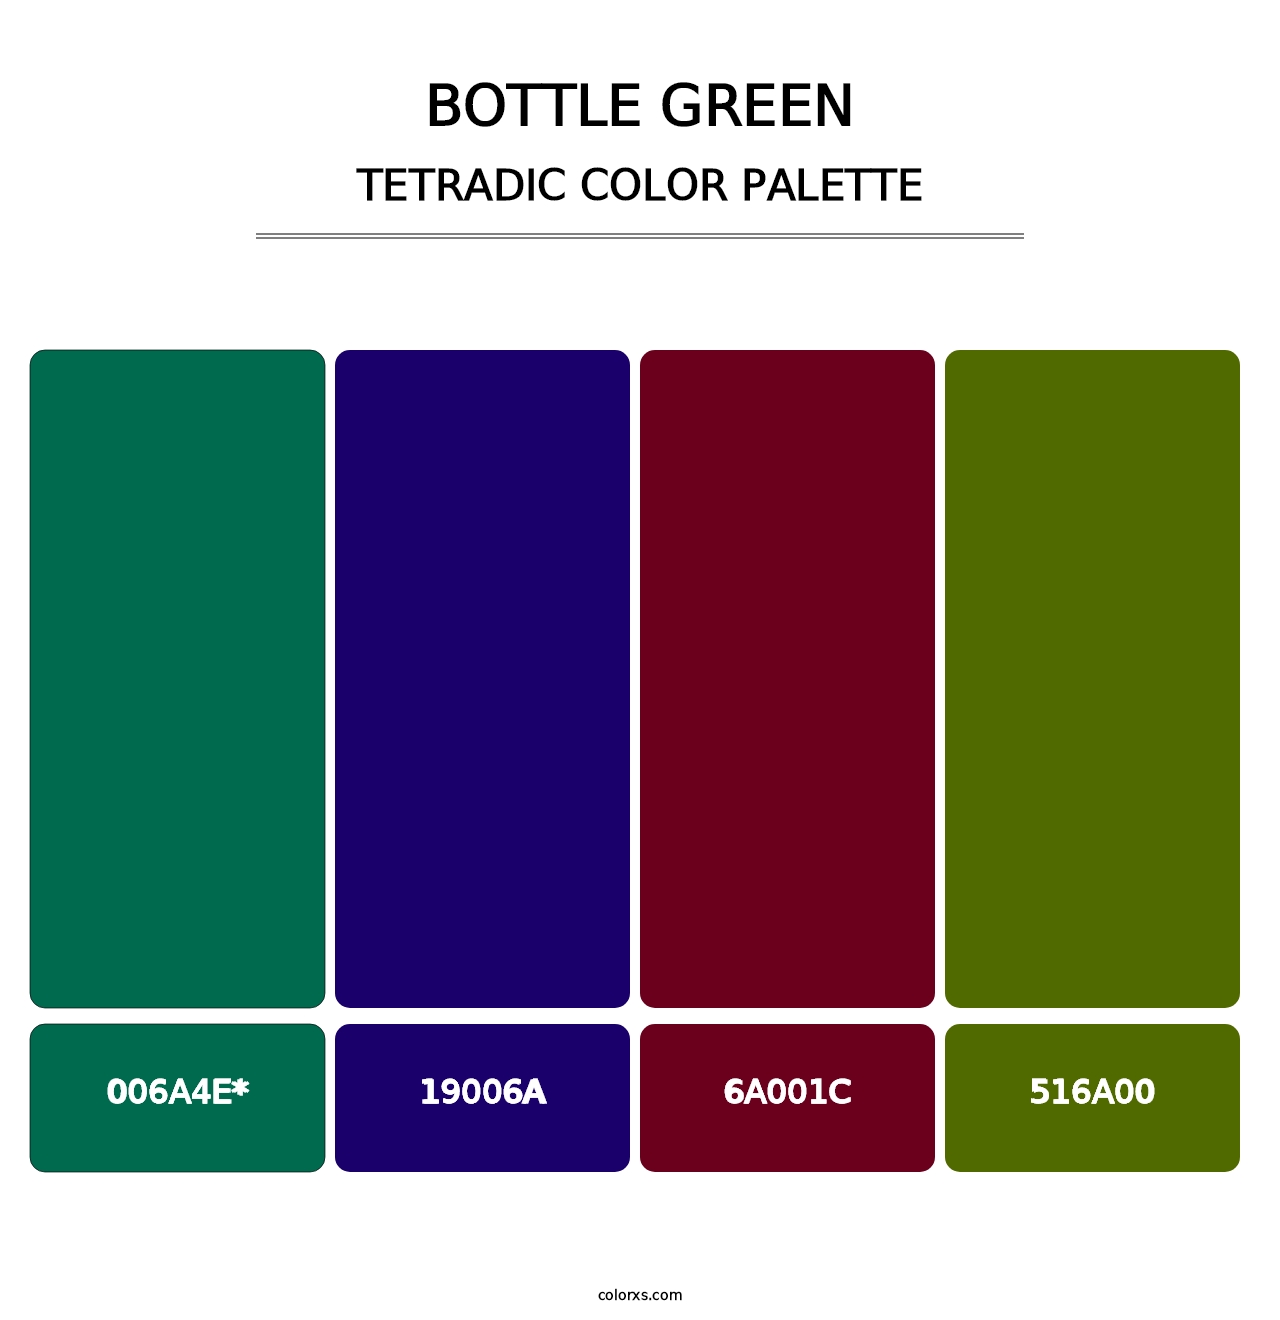 Bottle Green - Tetradic Color Palette